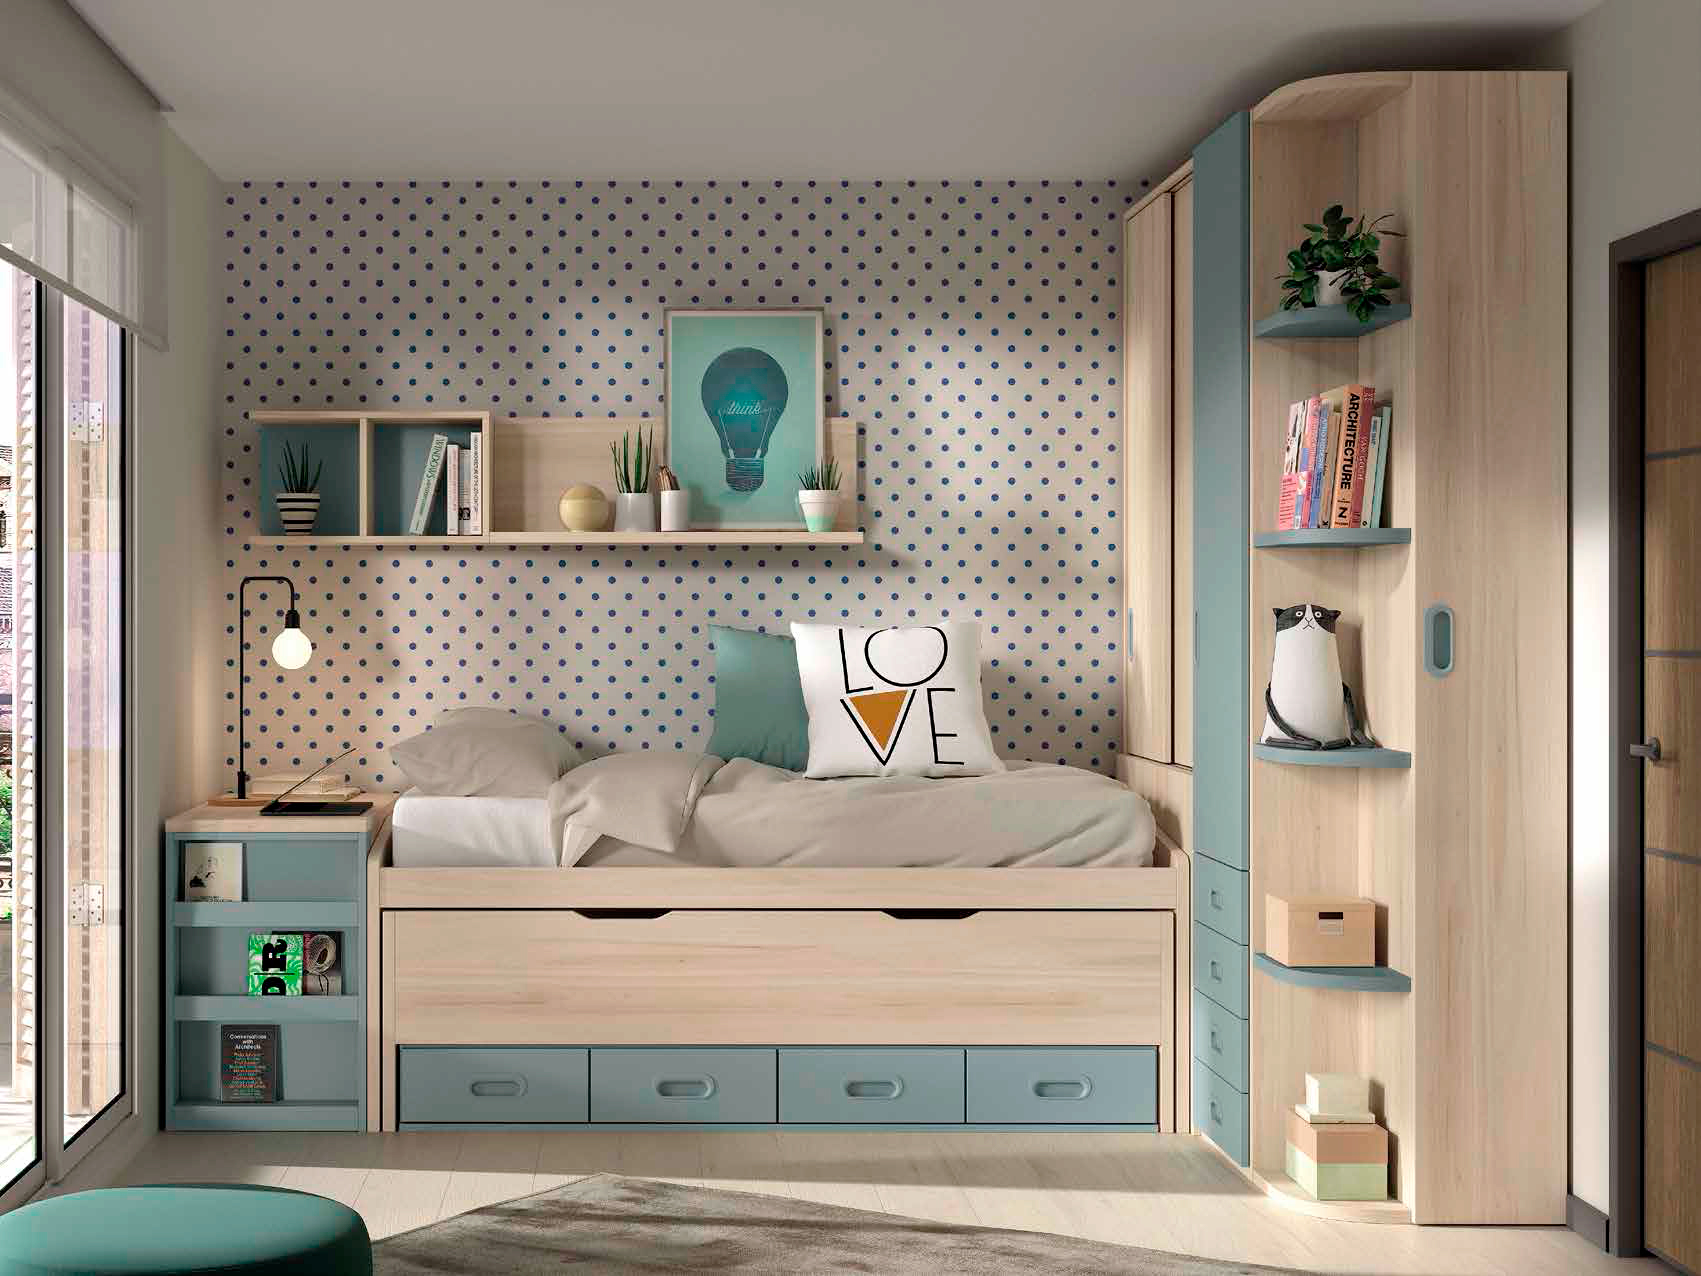 Dormitorio juvenil ámbar ocean de la colección Formas Evolution de Glicerio Chaves Hornero. Compuesto por armario, cama y arcón convertible.